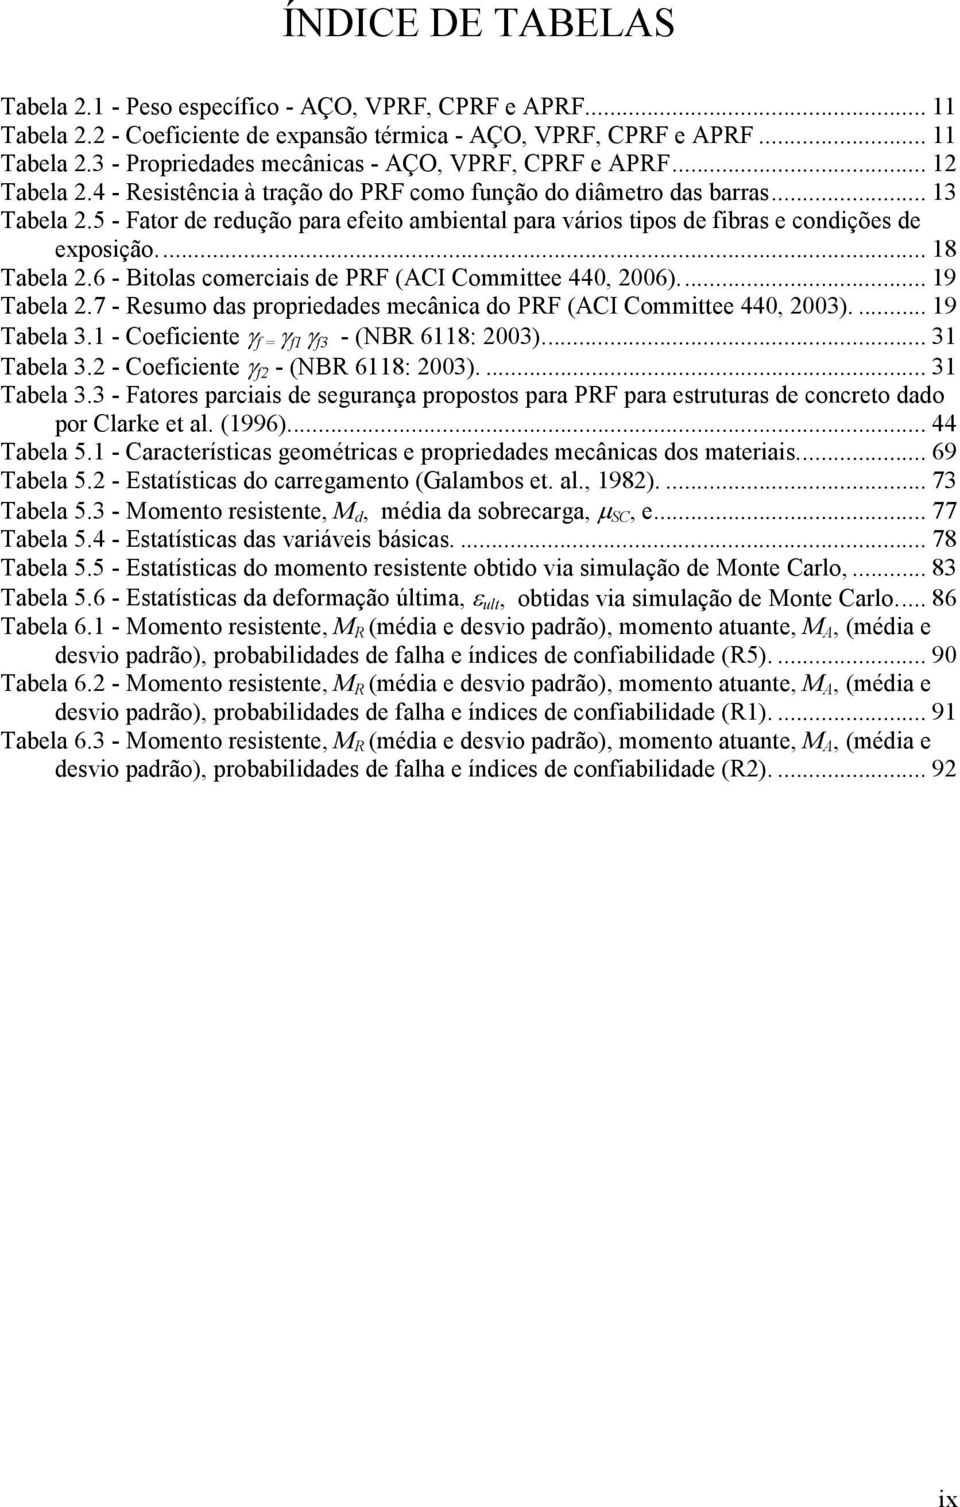 .. 18 Tabela 2.6 - Bitolas comerciais de PRF (ACI Committee 440, 2006)... 19 Tabela 2.7 - Resumo das propriedades mecânica do PRF (ACI Committee 440, 2003).... 19 Tabela 3.